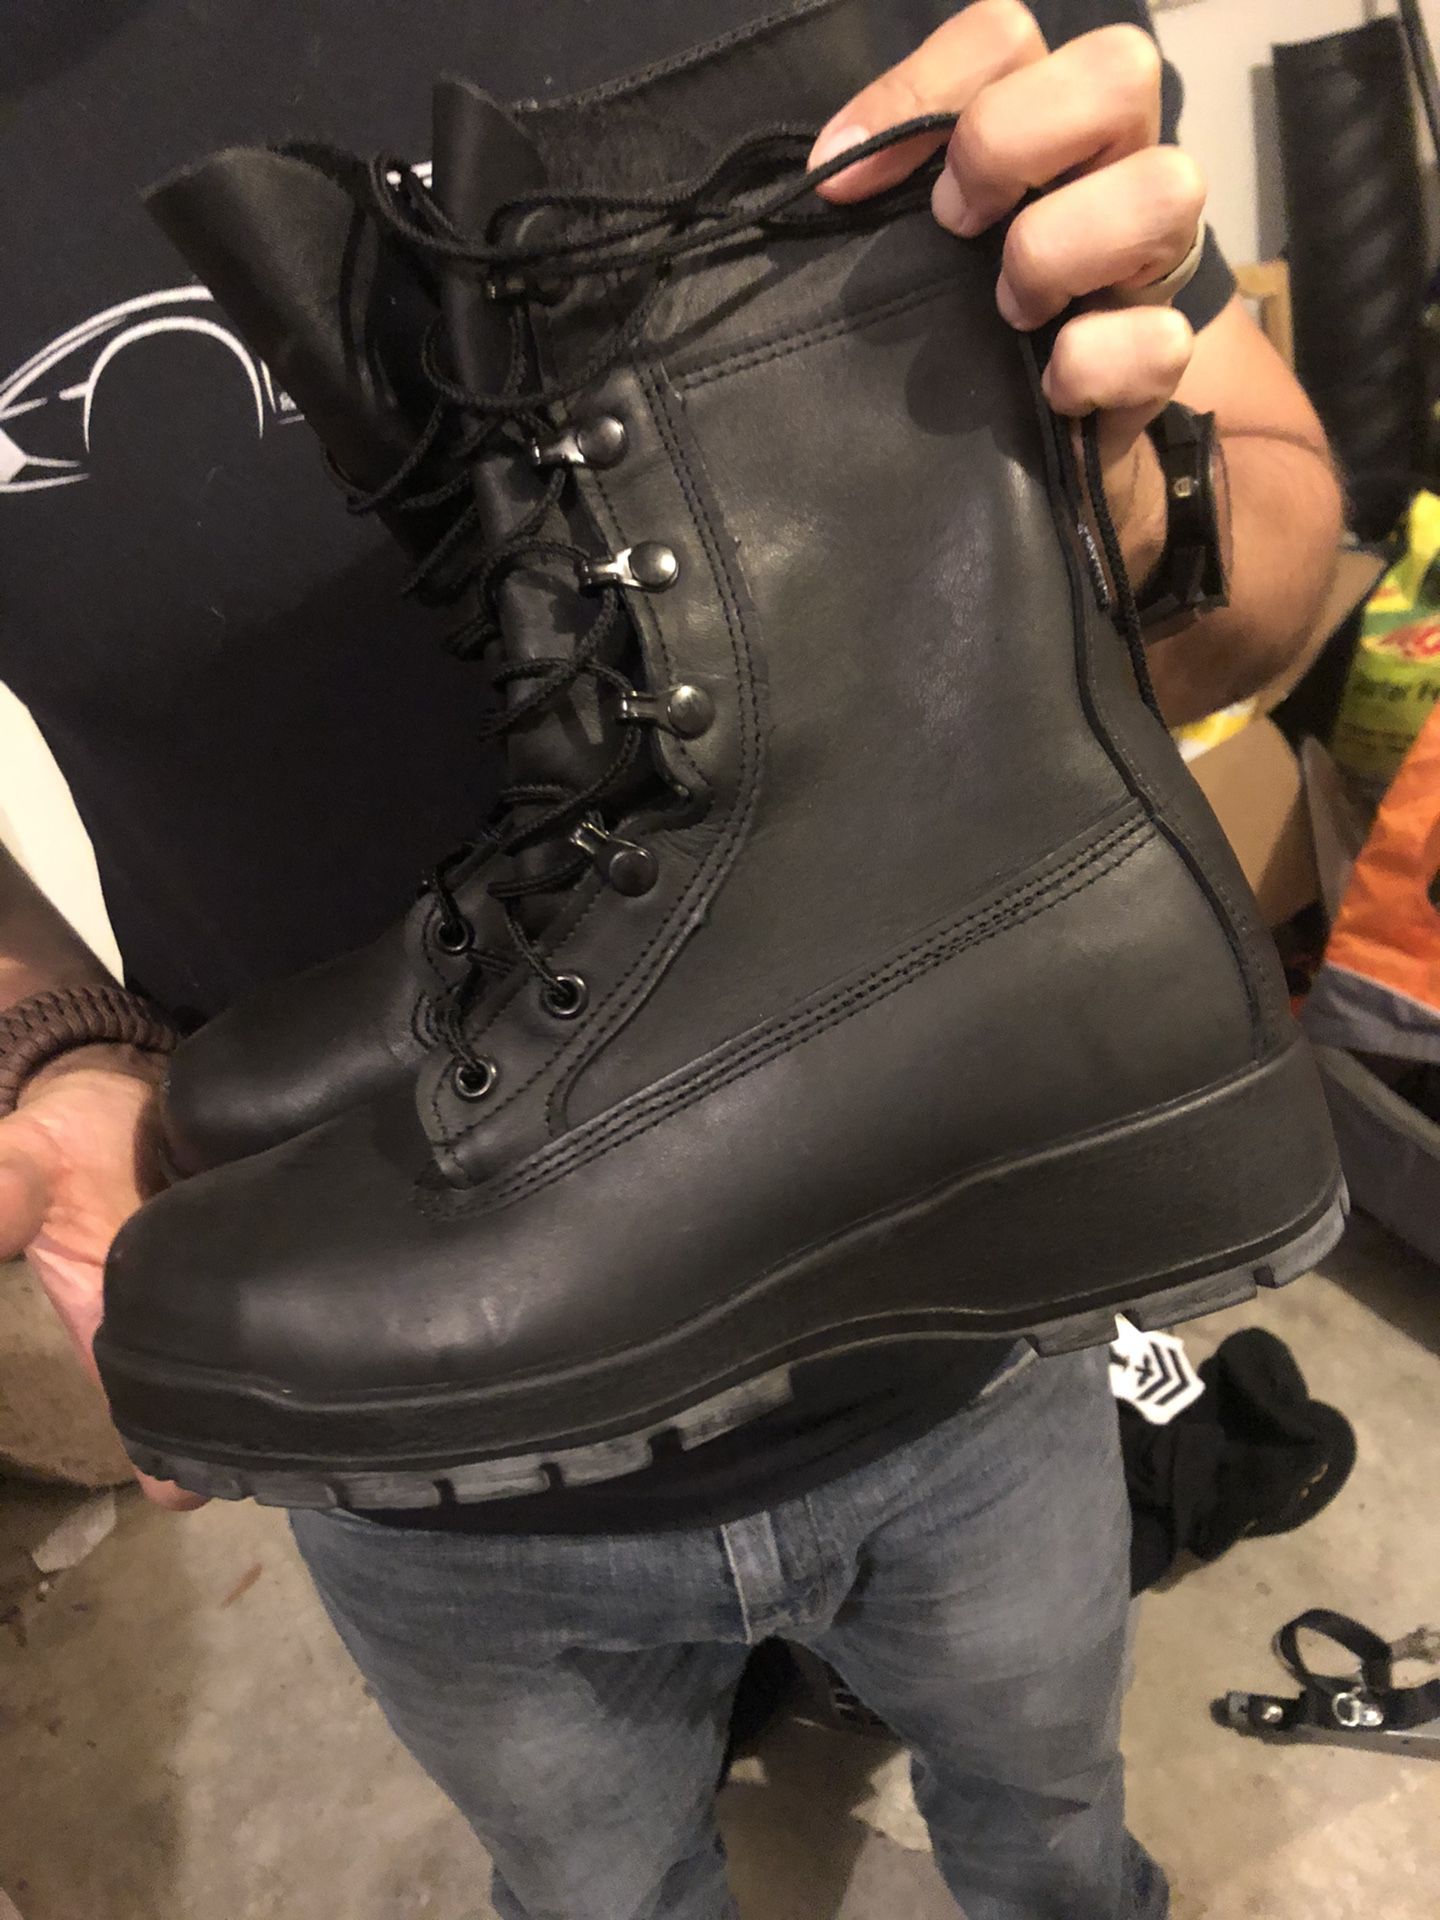 Black Work Boots- Vibram sole- steel toe, Size 7W